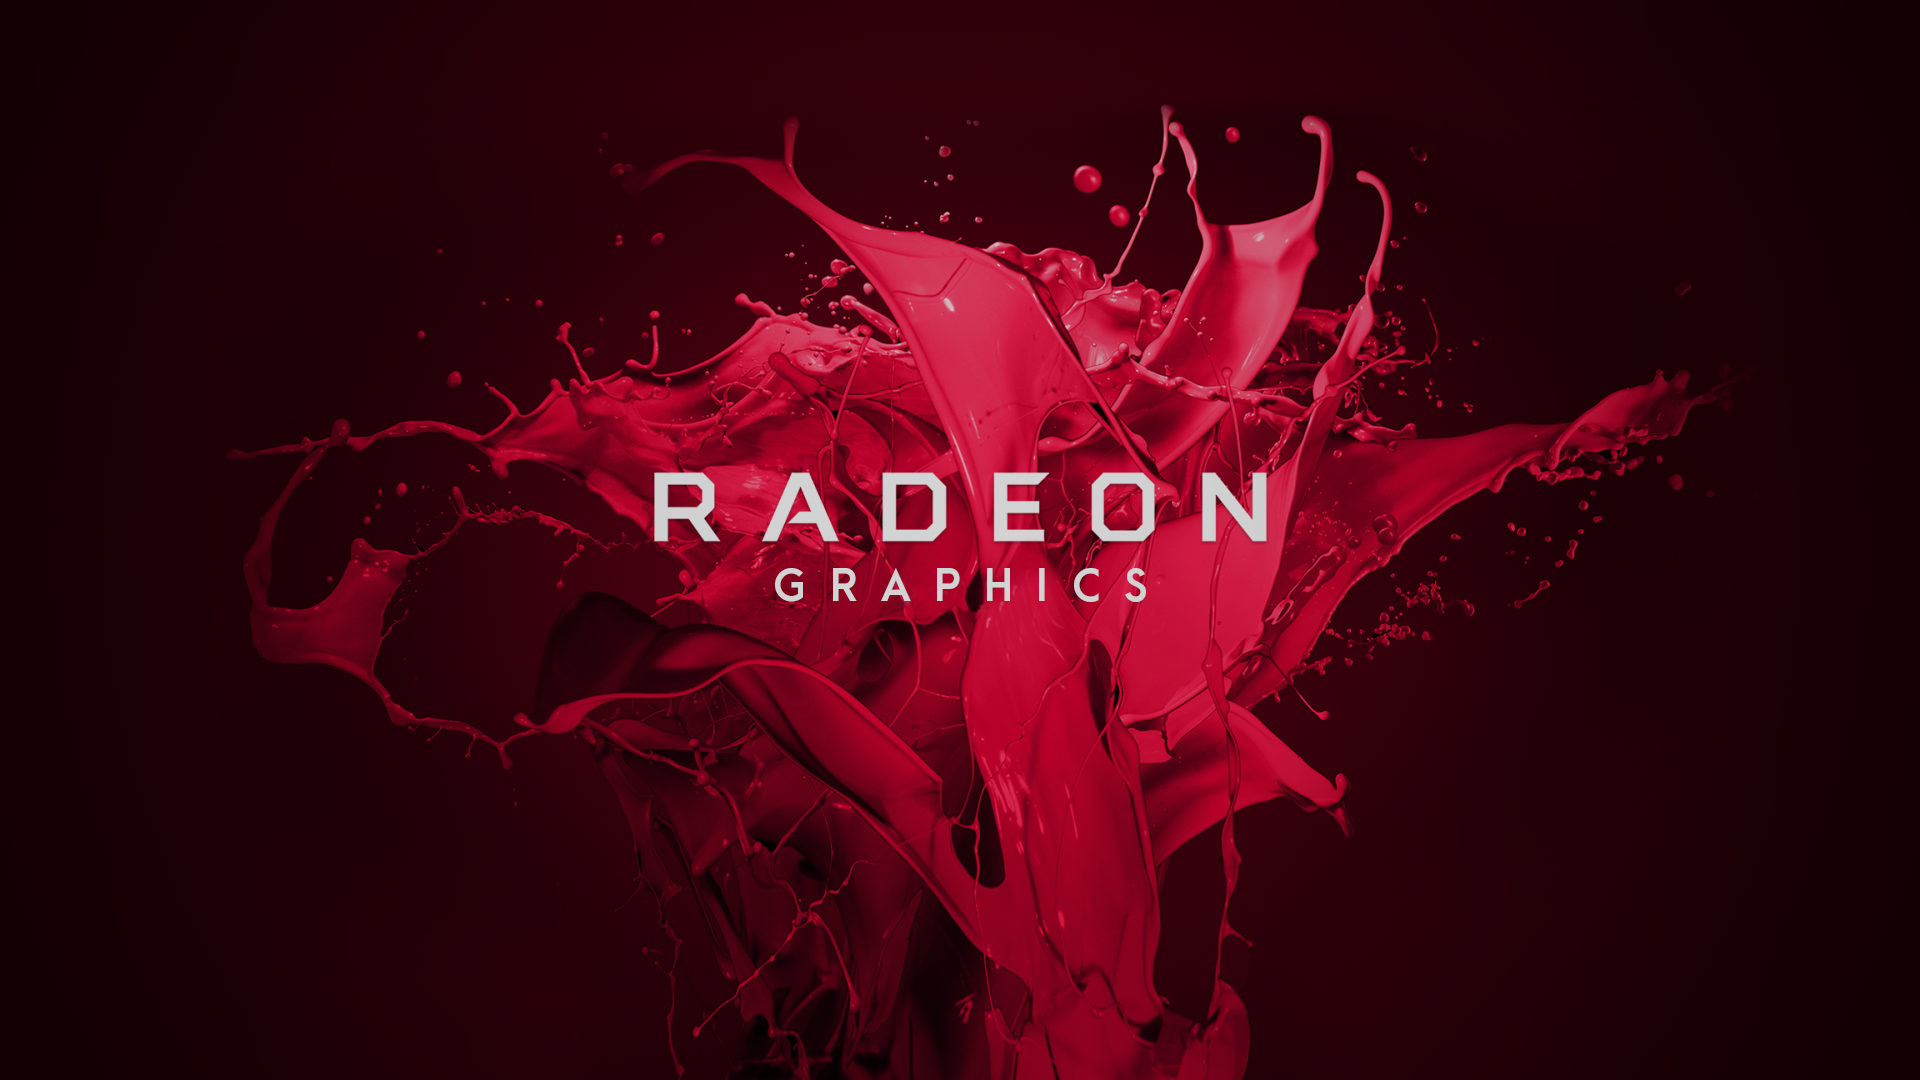 Σύντομα θα κυκλοφορήσει η AMD Radeon RX 6600 XT με σύστημα ψύξης μονού ανεμιστήρα